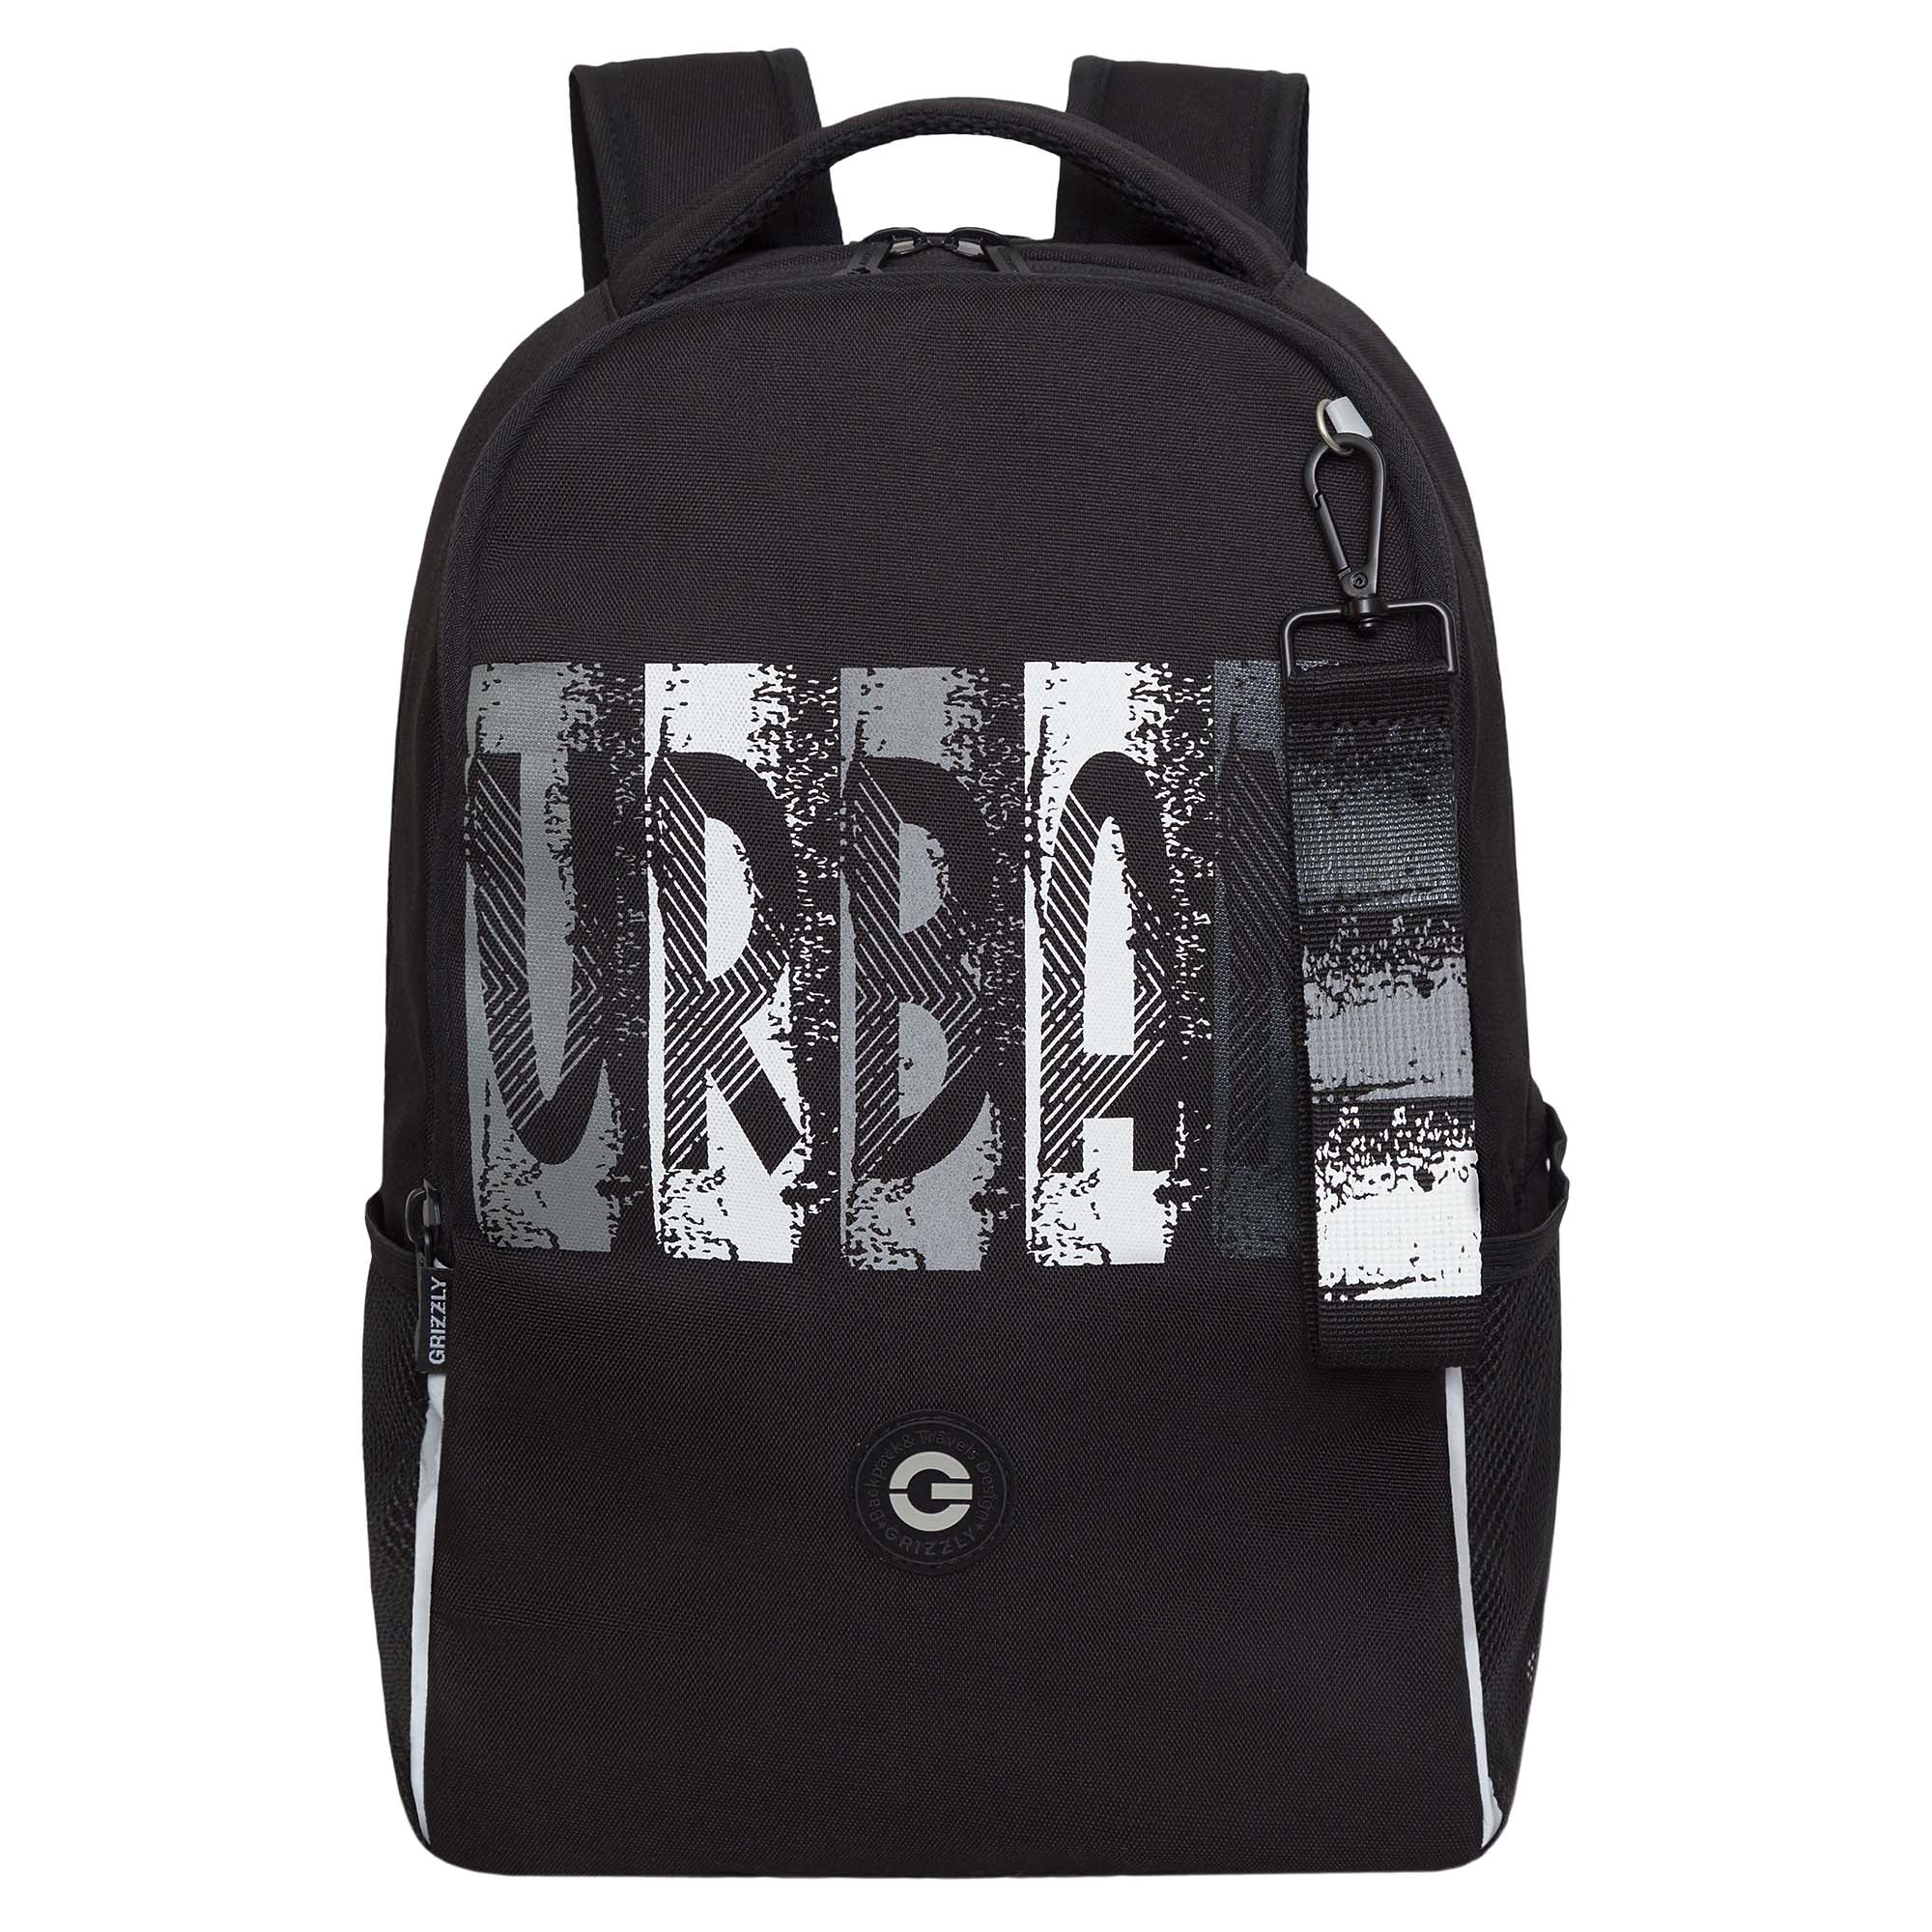 Рюкзак школьный GRIZZLY легкий с жесткой спинкой, 2 отделения, черный; серый, RB-451-3/2 рюкзак grizzly с отделением для ноутбука анатомический серый ru 434 3 1